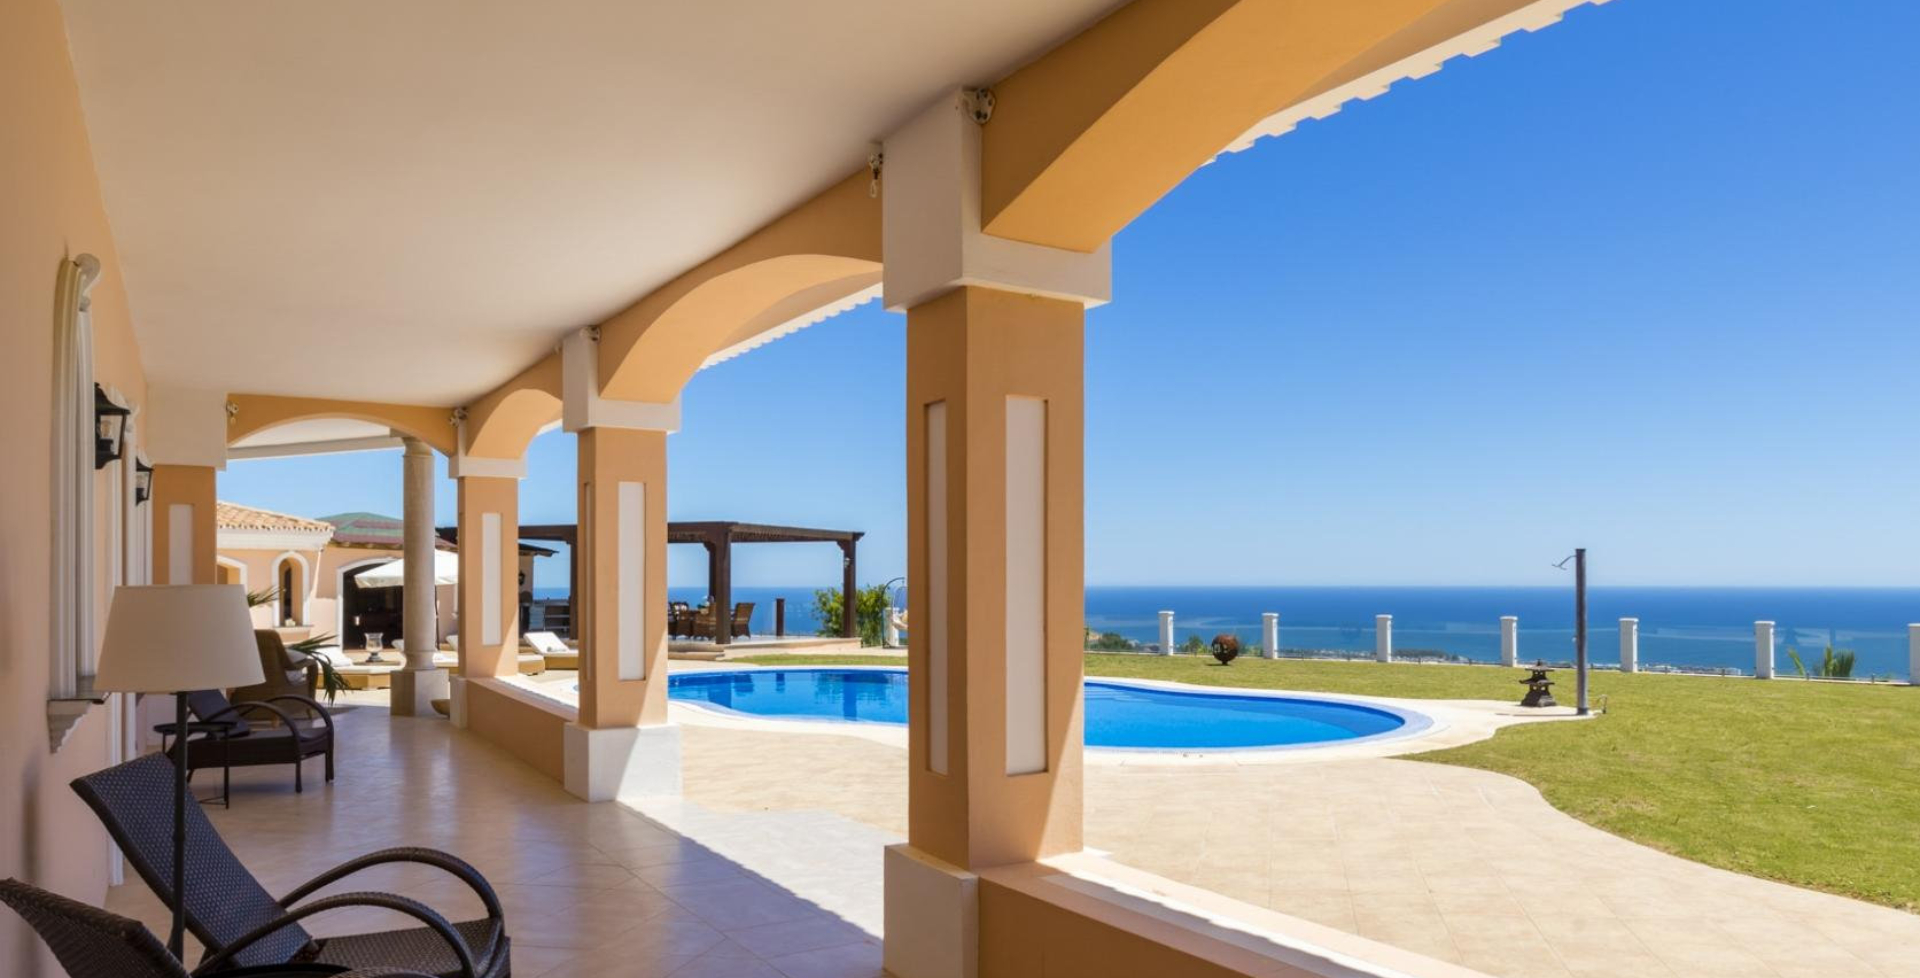 Villa Vista 4 bed – pool terrace views